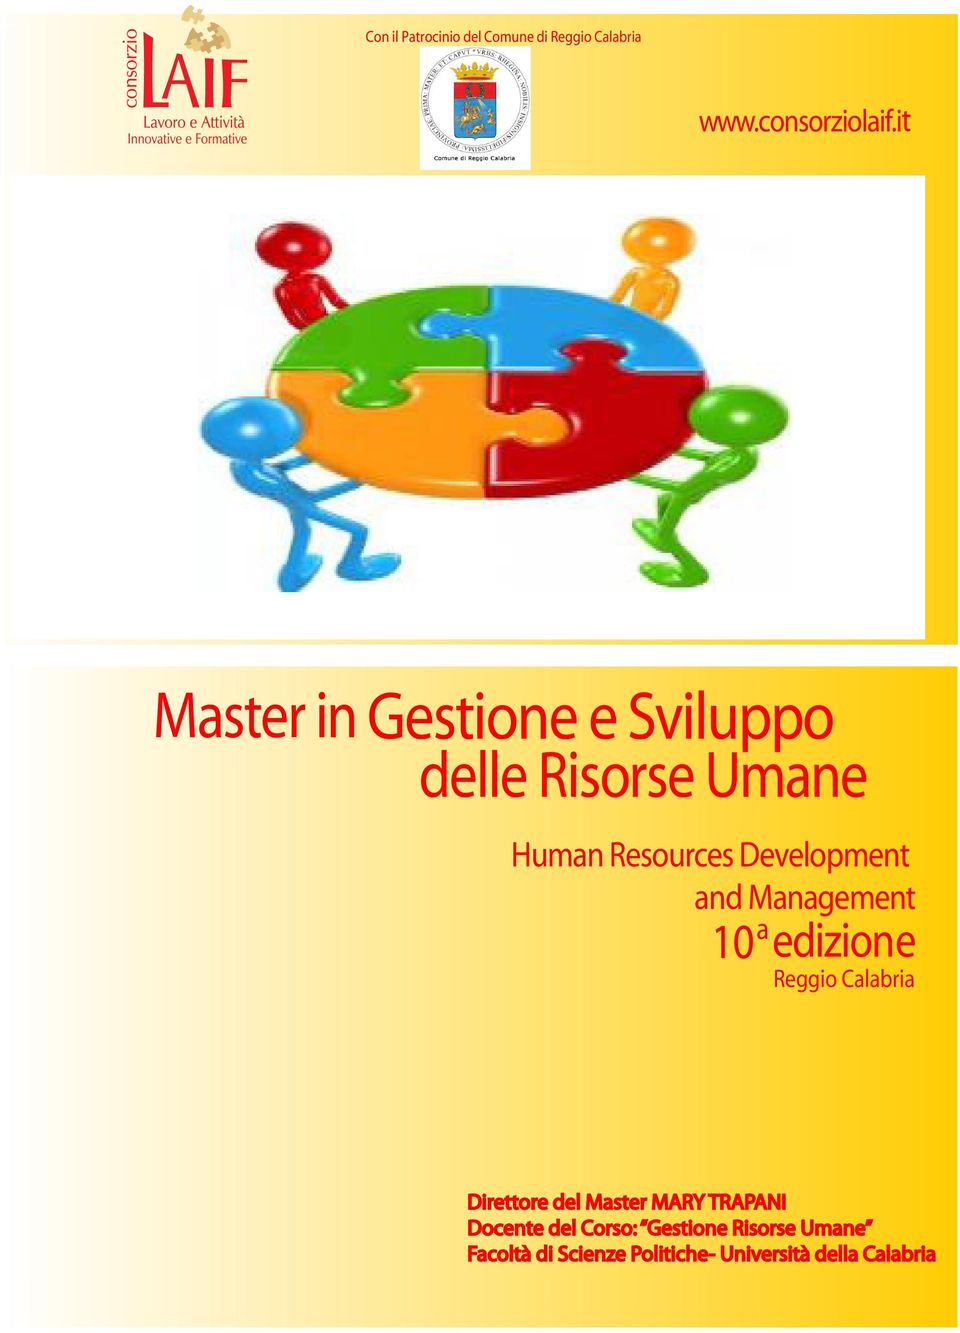 and Management a 10 edizione Reggio Calabria Direttore del Master MARY TRAPANI